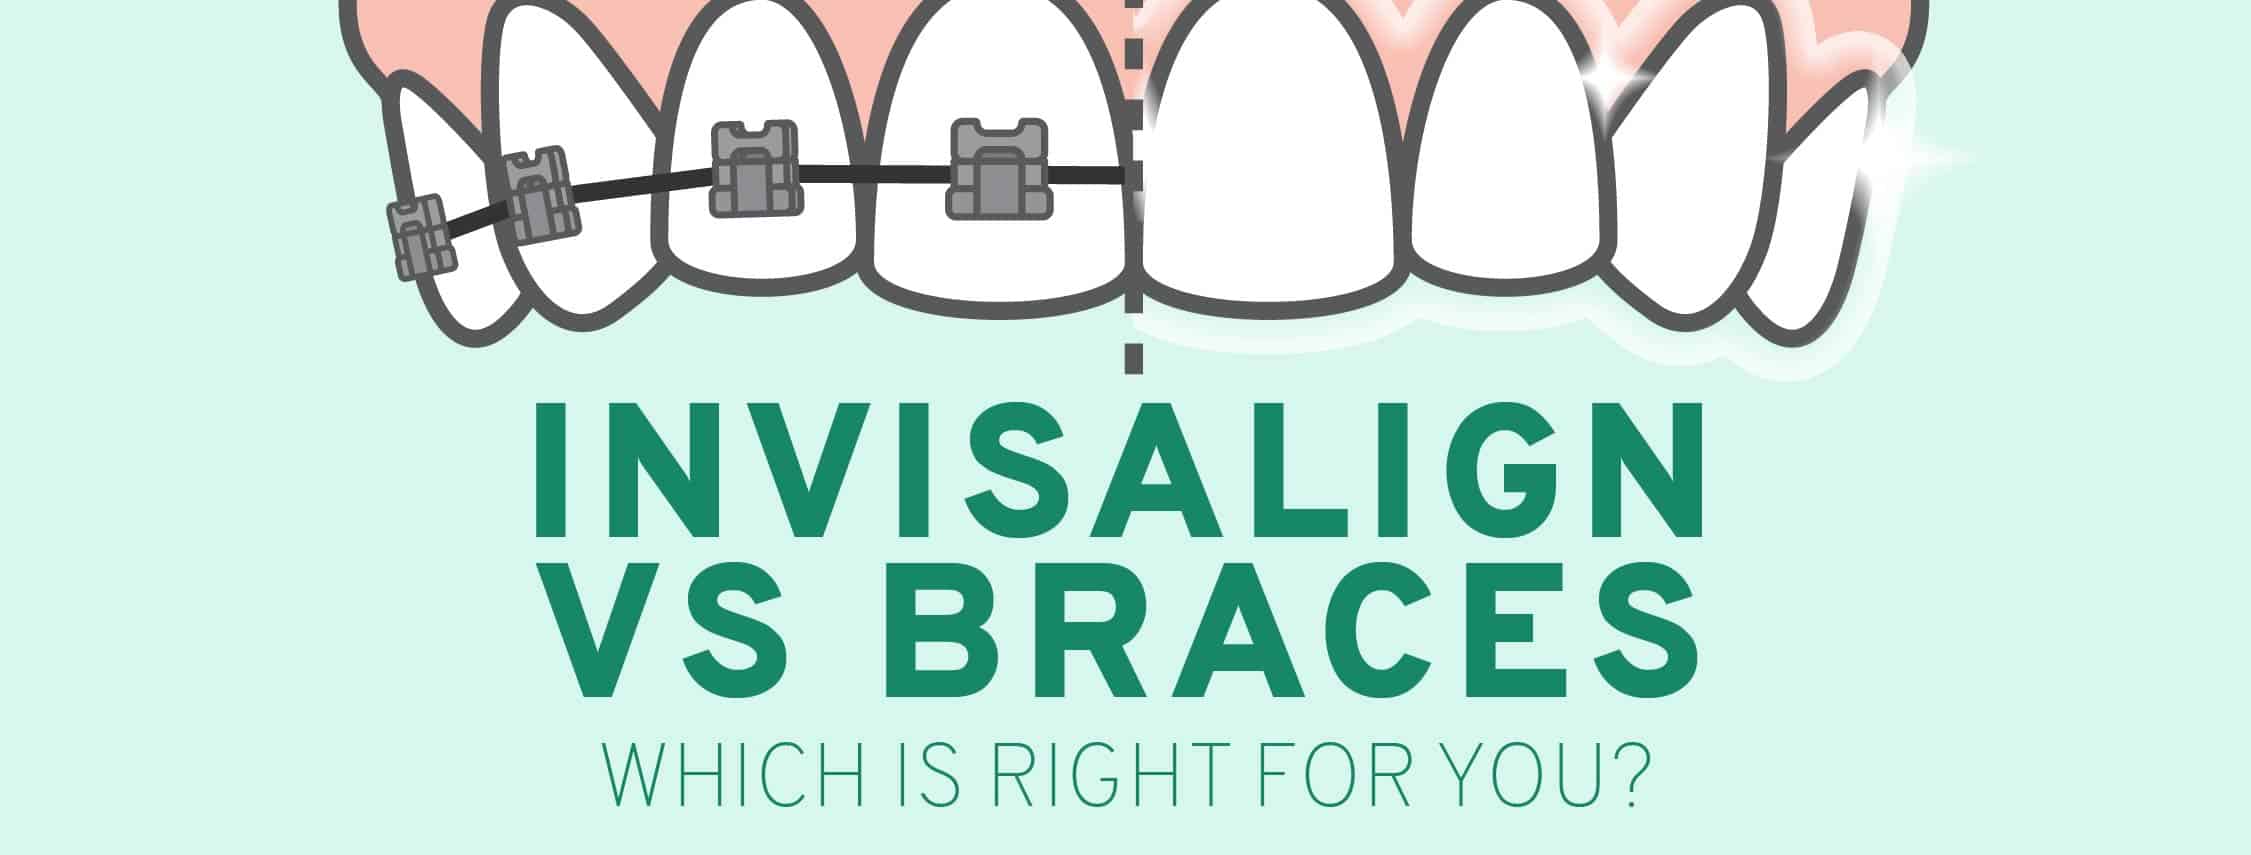 invisalign vs braces graphic